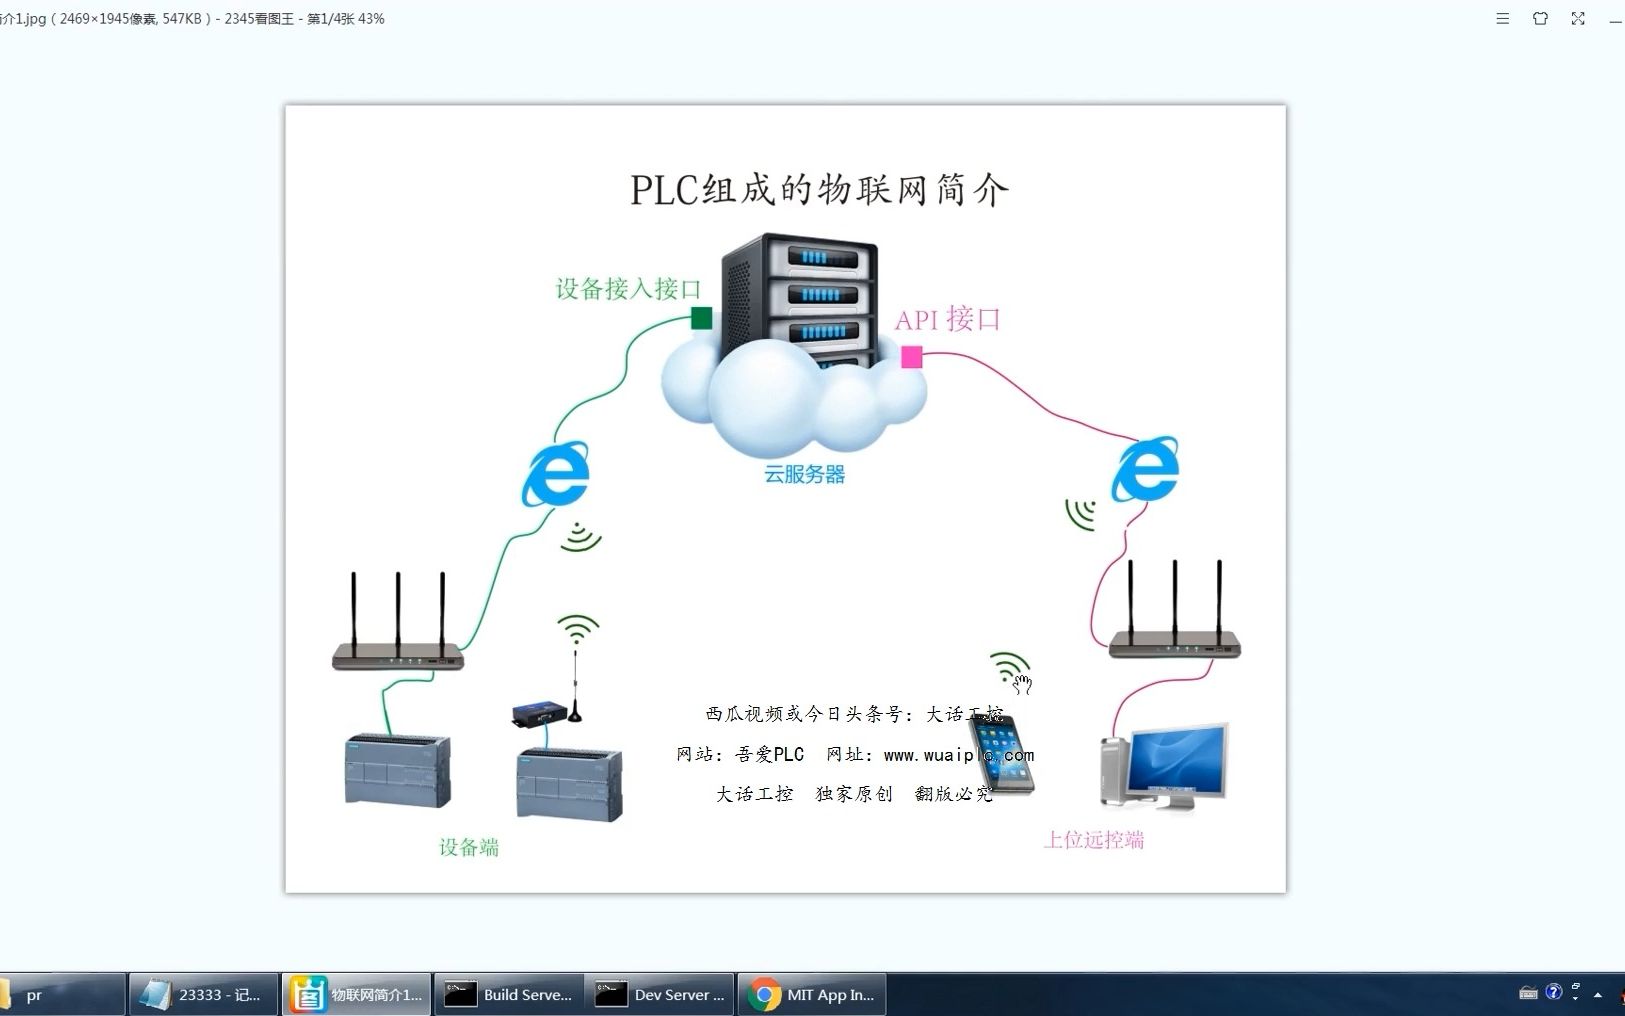 PLC和手机APP实现物联网功能（共21集）1：物联网和本套教程简介。